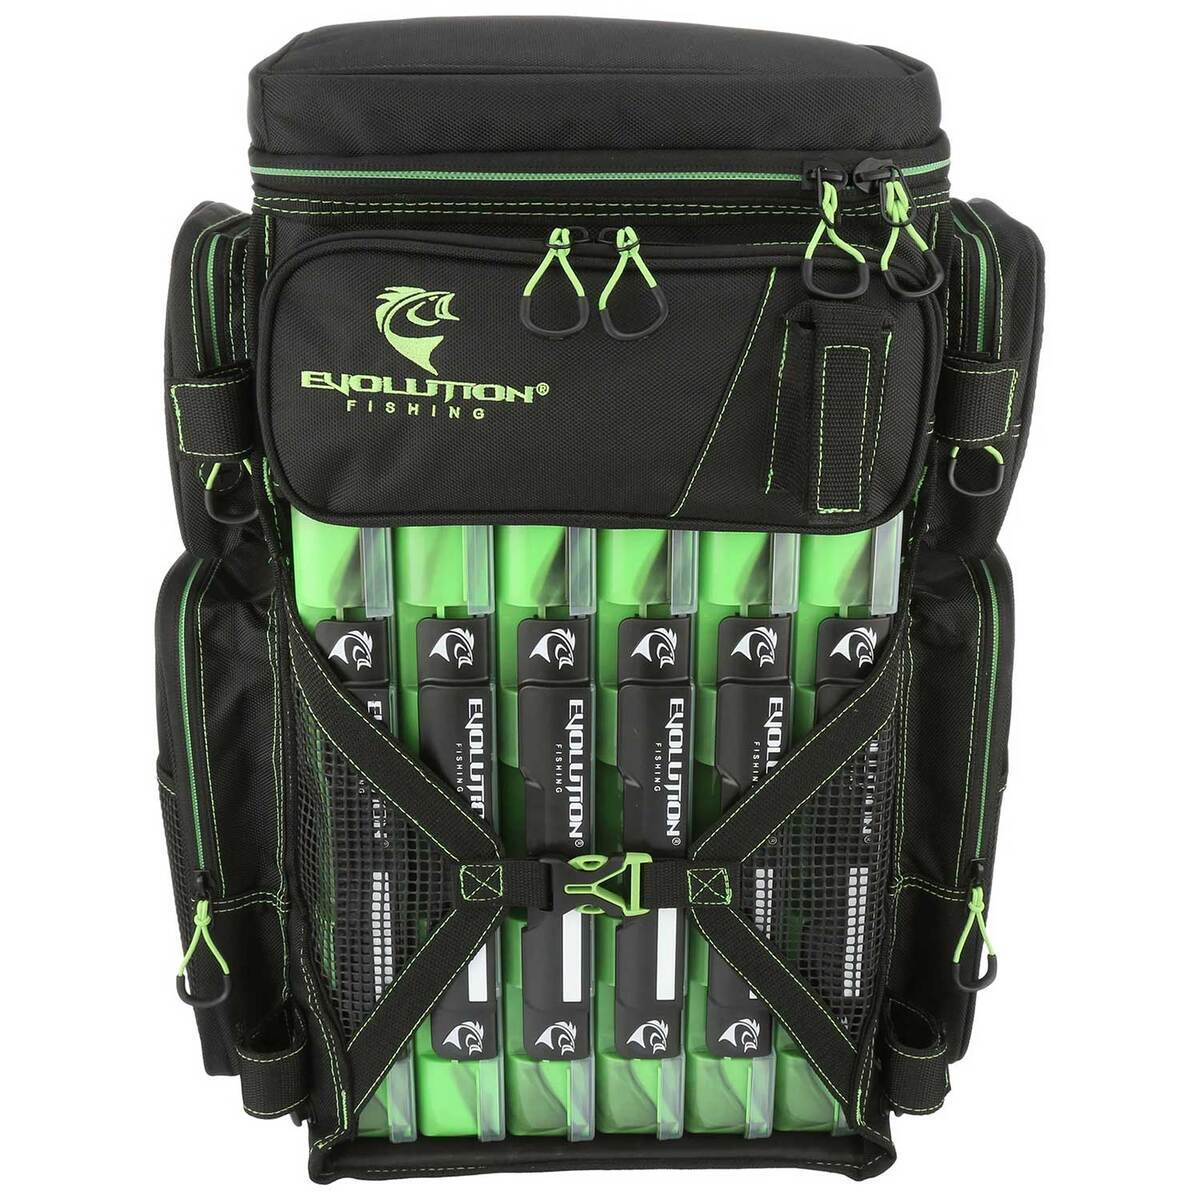 https://www.sportsmans.com/medias/evolution-outdoors-drift-series-3700-tackle-backpack-green-1873709-1.jpg?context=bWFzdGVyfGltYWdlc3wxNzk2MzR8aW1hZ2UvanBlZ3xhRGM1TDJnMU5TOHhNakEzTWprNE5Ea3pOalEzT0M4eE1qQXdMV052Ym5abGNuTnBiMjVHYjNKdFlYUmZZbUZ6WlMxamIyNTJaWEp6YVc5dVJtOXliV0YwWDNOdGR5MHhPRGN6TnpBNUxURXVhbkJufDljMDQ5NjQwMDI5MDgwY2RlMjZhMDUzZjEwNTExN2YyOGI2MzlmMDIzNjE1YWVjNzEwNWE5ZTgyMmY1MmZjOWY